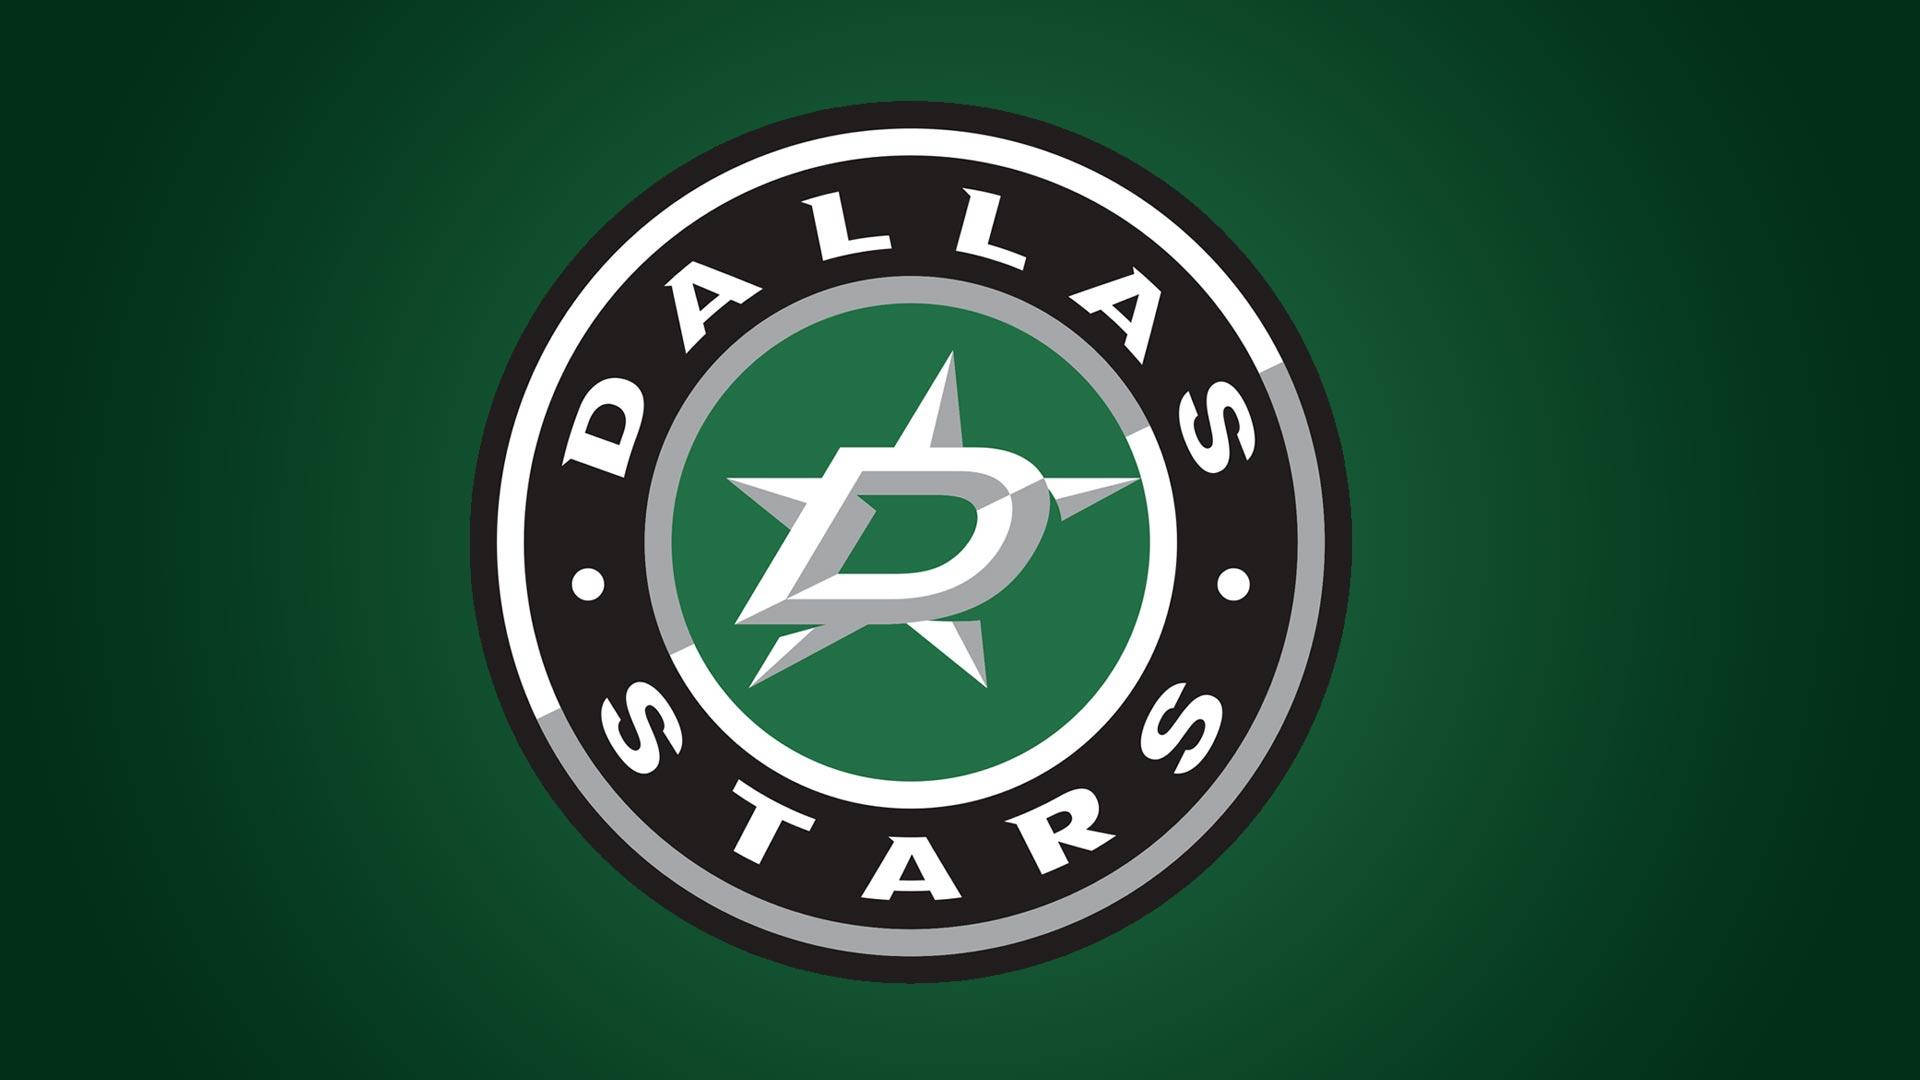 Plano De Fundo Do Dallas Stars